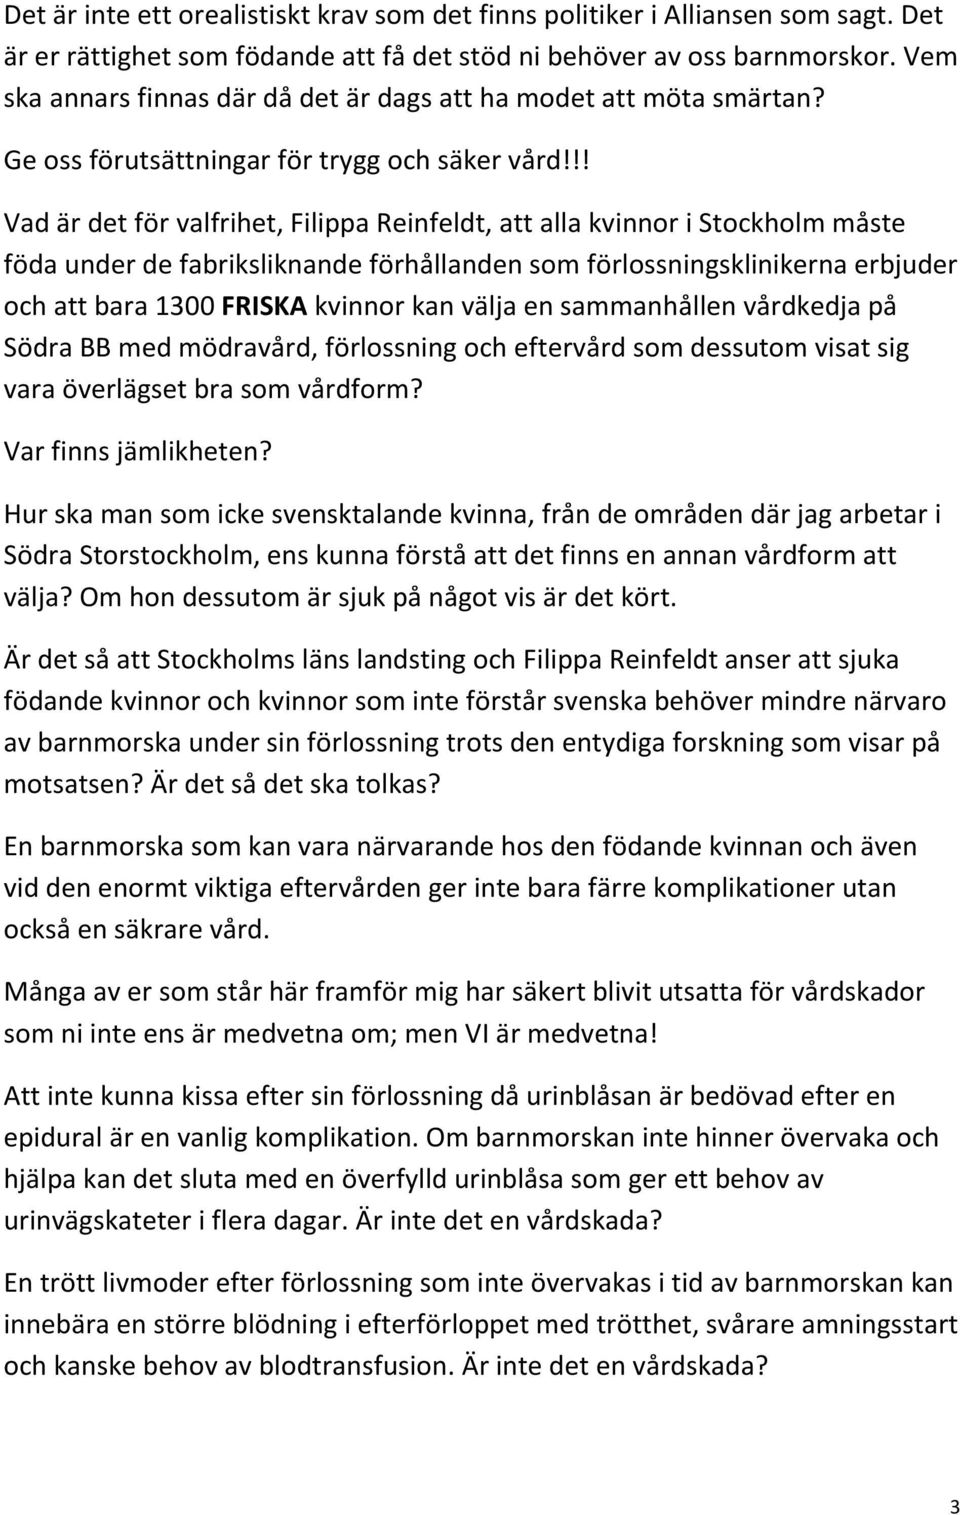 !! Vad är det för valfrihet, Filippa Reinfeldt, att alla kvinnor i Stockholm måste föda under de fabriksliknande förhållanden som förlossningsklinikerna erbjuder och att bara 1300 FRISKA kvinnor kan